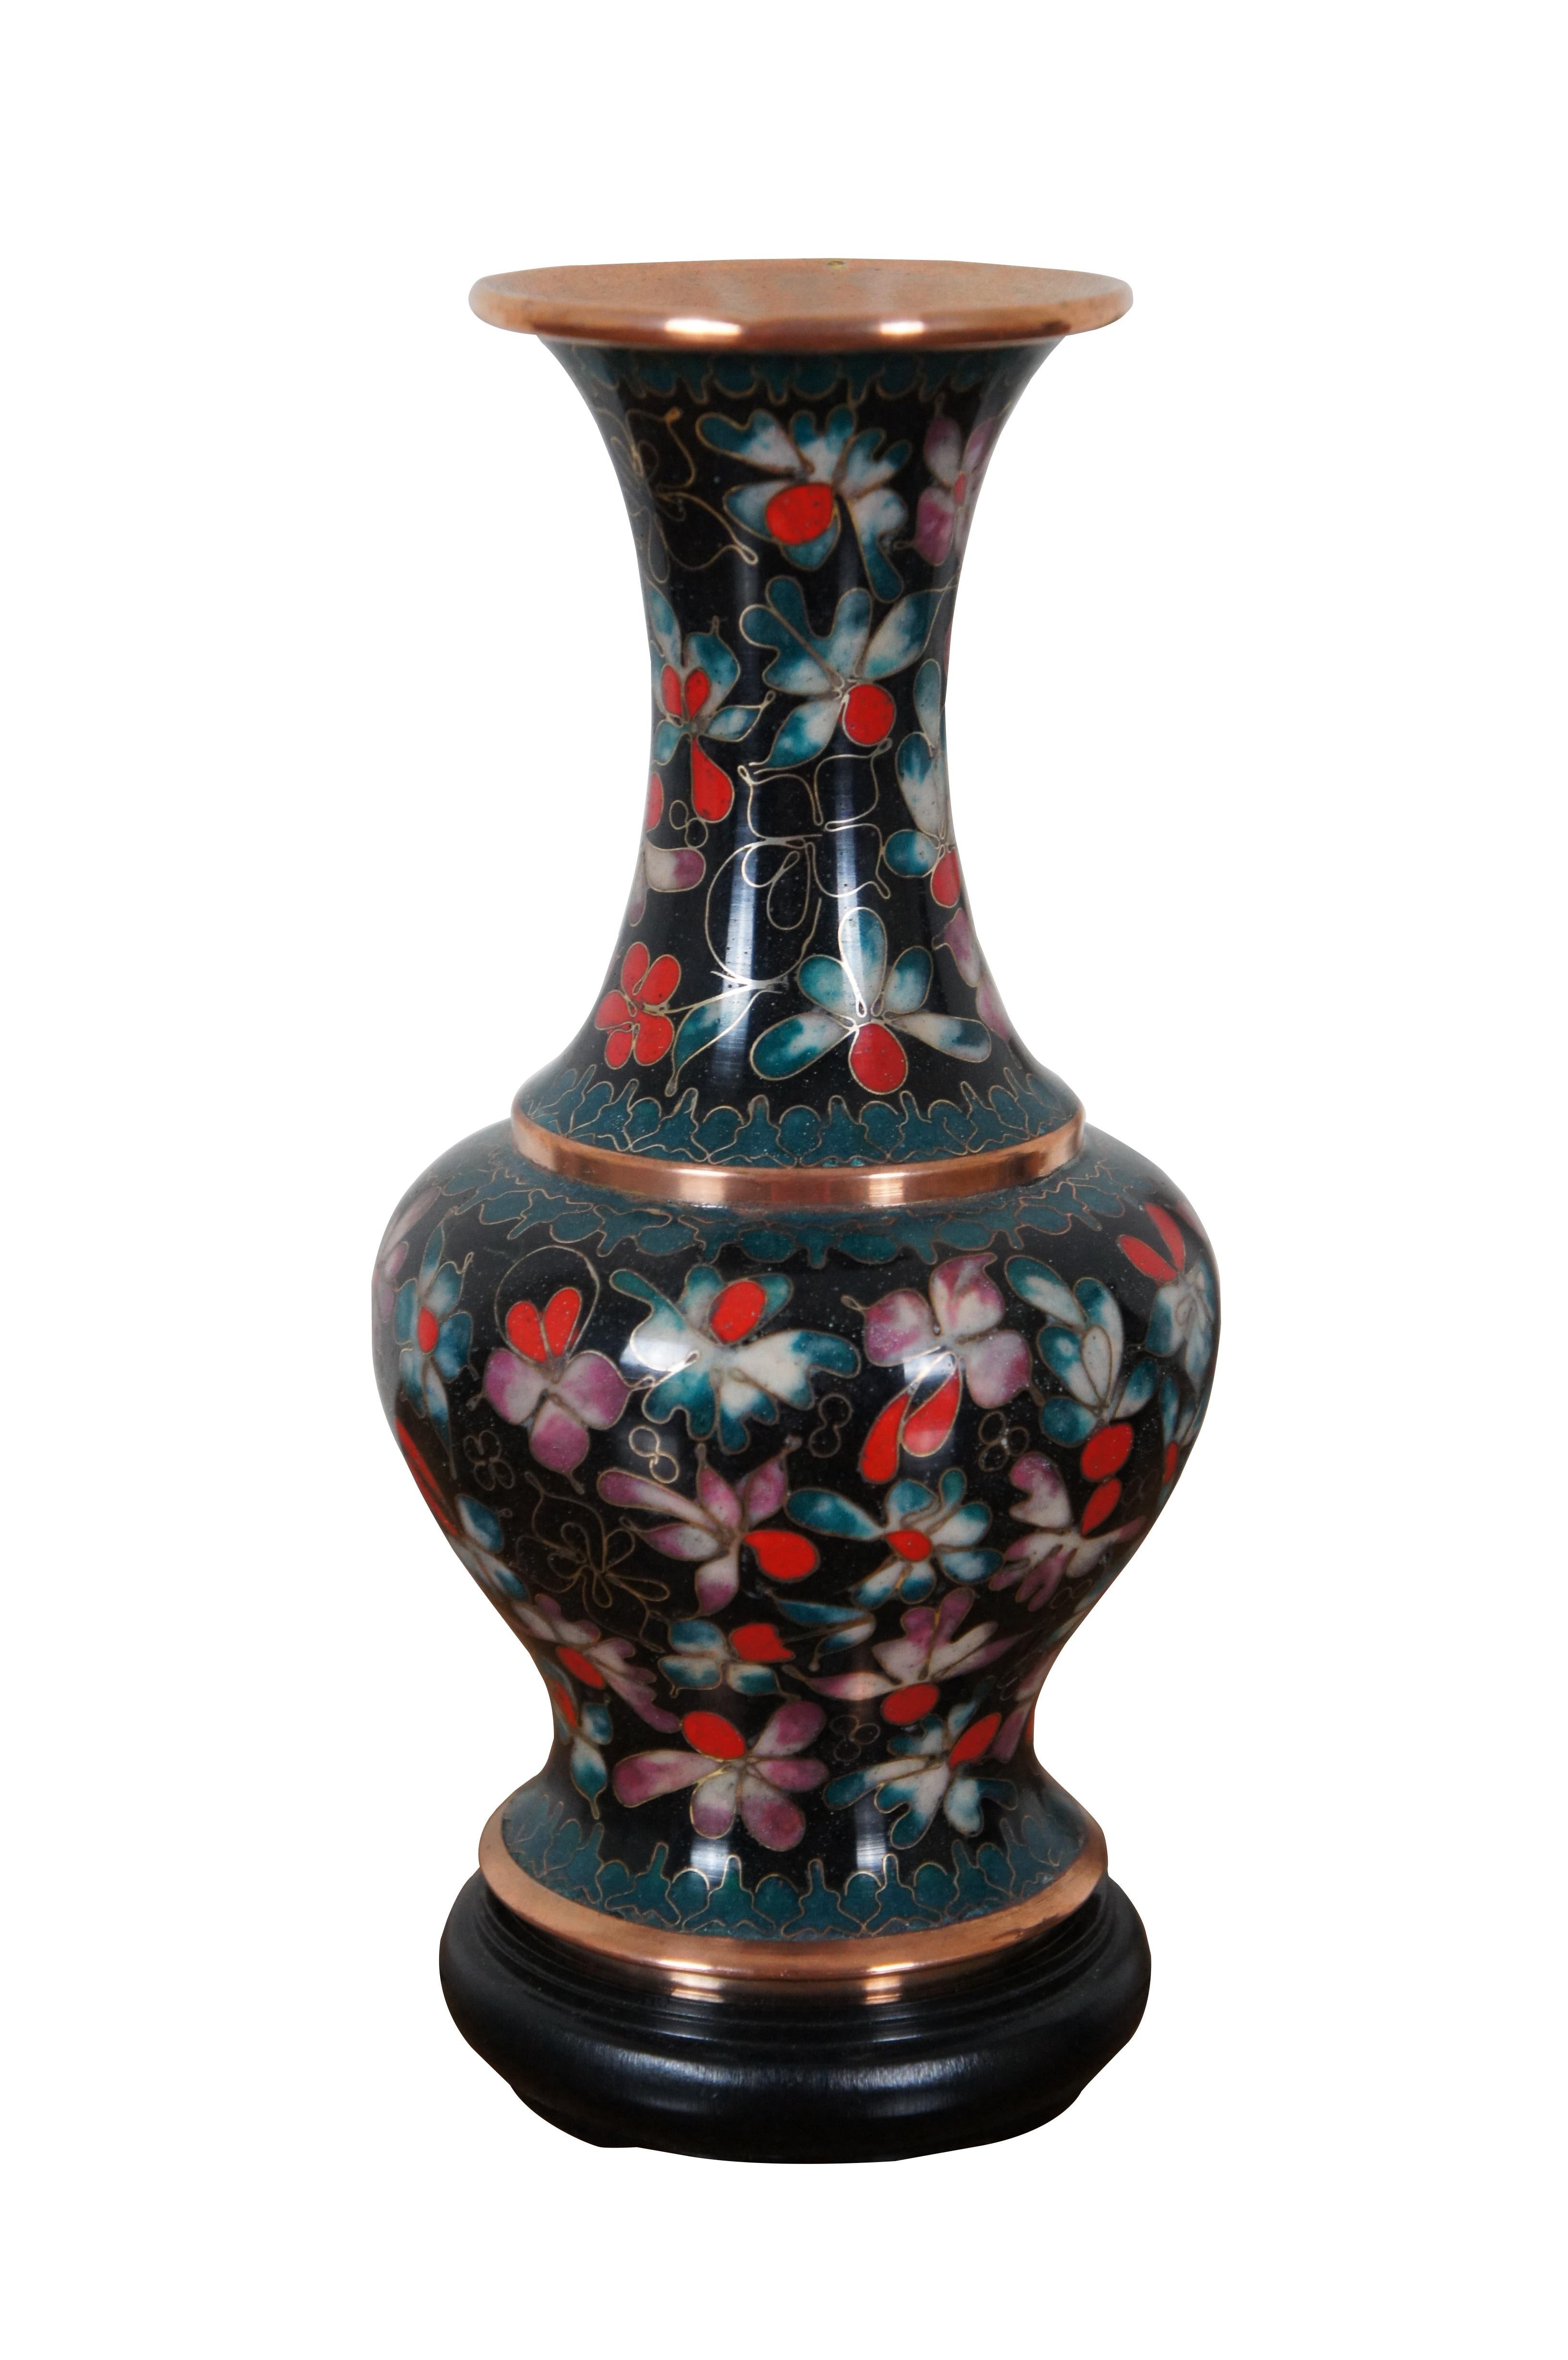 Deux vases ou urnes vintage émaillés au cloisonné de Robert Kuo, avec un motif floral et un sommet évasé.  La cloison chinoise de KUO.  Bases / supports inclus.

Dimensions :
4,25